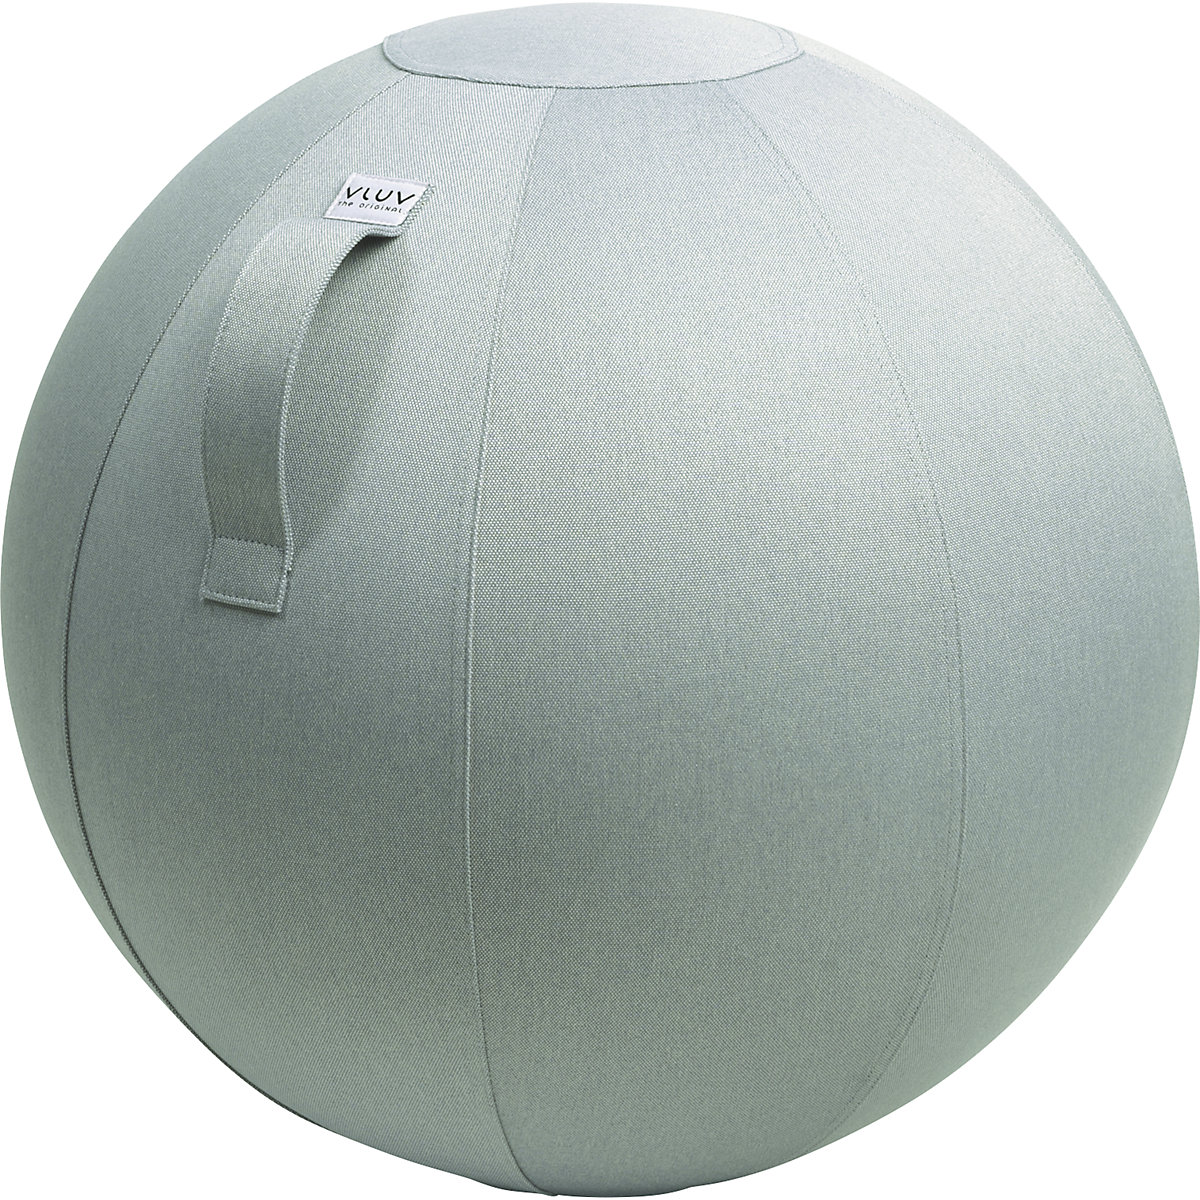 Piłka do siedzenia LEIV – VLUV, pokrowiec z tkaniny o wyglądzie płótna, 600 – 650 mm, srebrno-szara-13